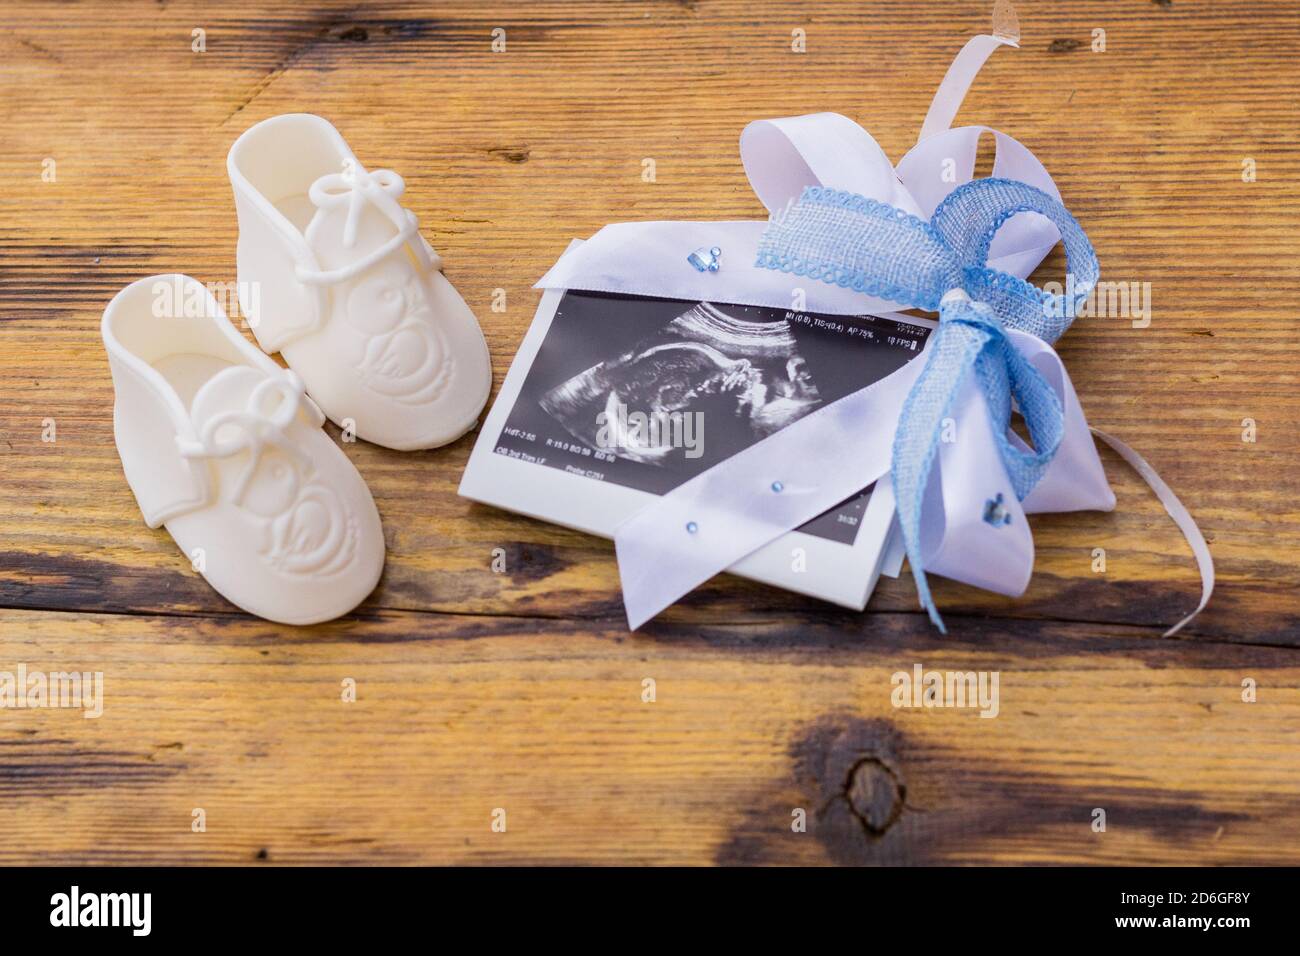 Arriva la cicogna: Annunciare la gravidanza in modo creativo  Annunciare  la gravidanza, Foto di donne incinte, Foto di bebè